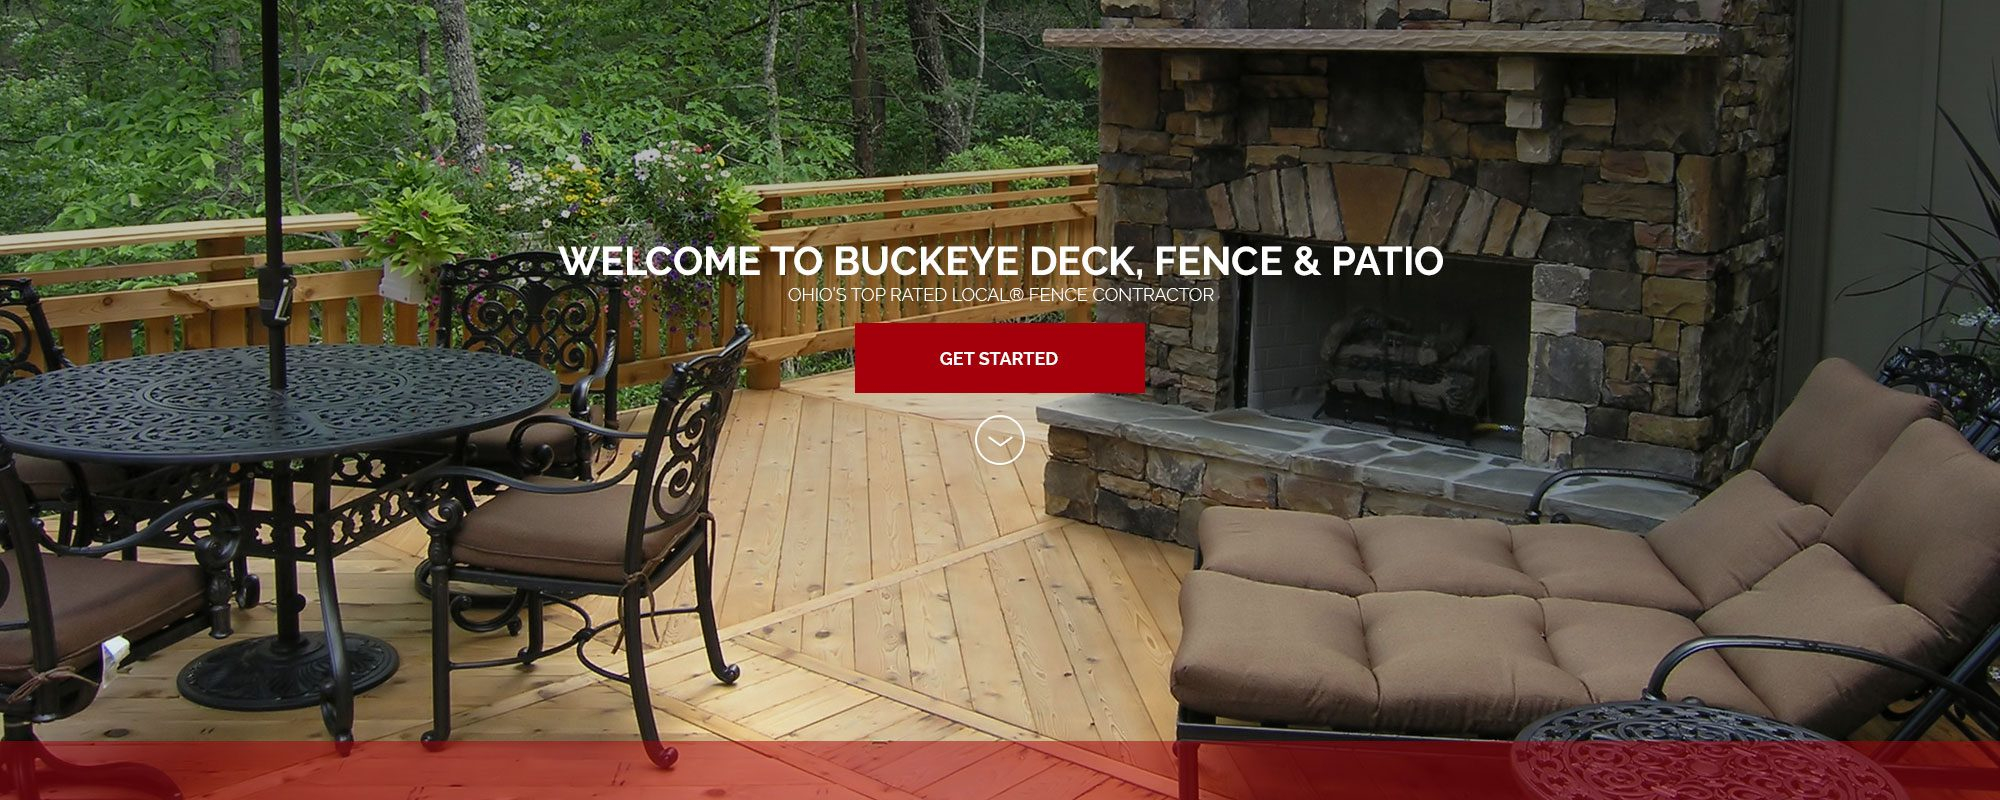 Welcome To Buckeye Buckeye Deck Fence Patio throughout measurements 2000 X 800